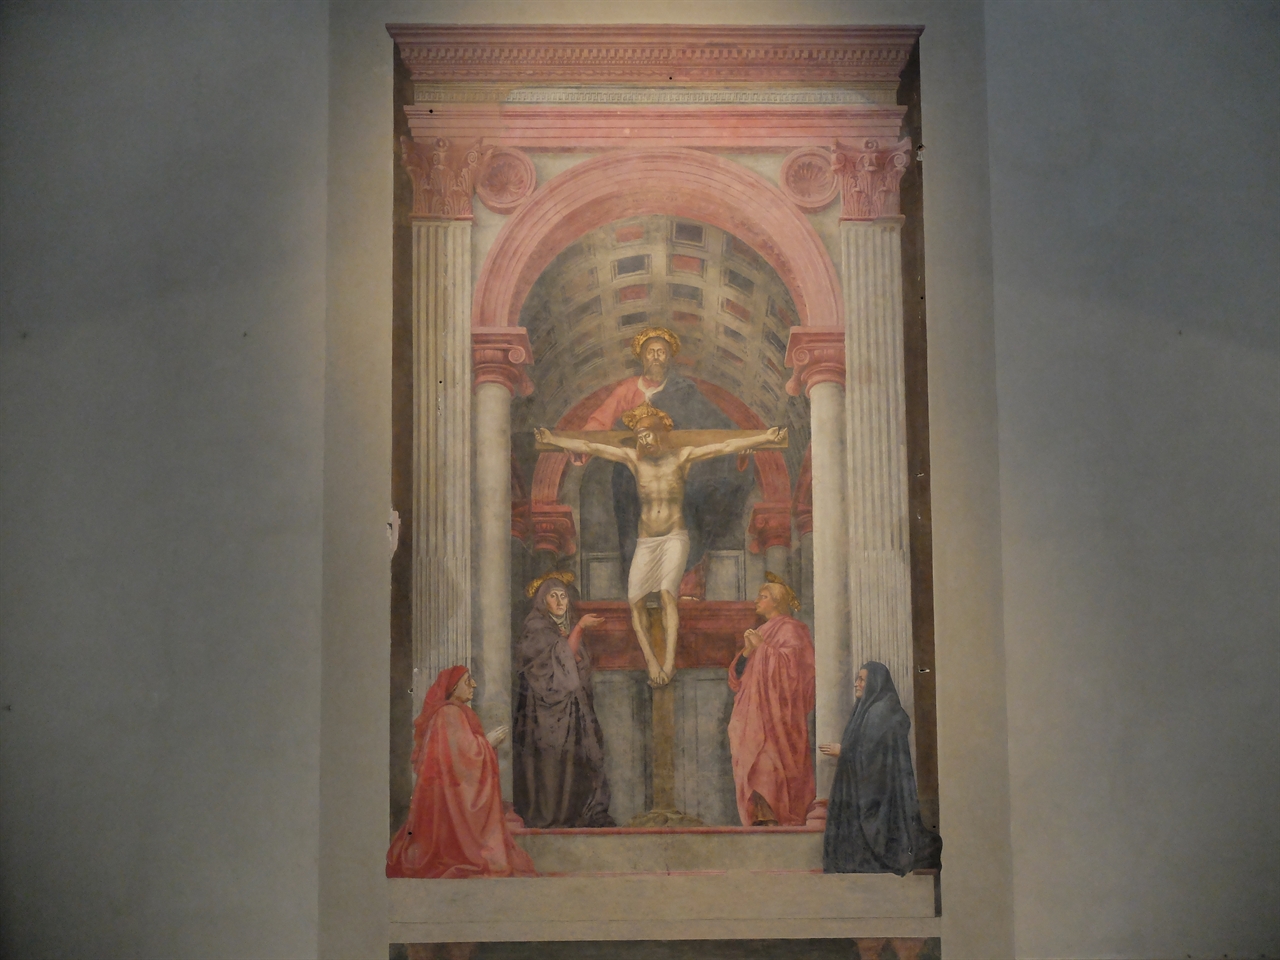 마사초 '성 삼위일체' 피렌체, 산타 마리아 노벨라 성당. 브루넬레스키가 고안한 일점 투시 원근법을 이용한 최초의 그림입니다. 마사초의 이 그림 이후 화가들은 화면에서 무한한 새로운 공간들을 만들어 내게 됩니다. 